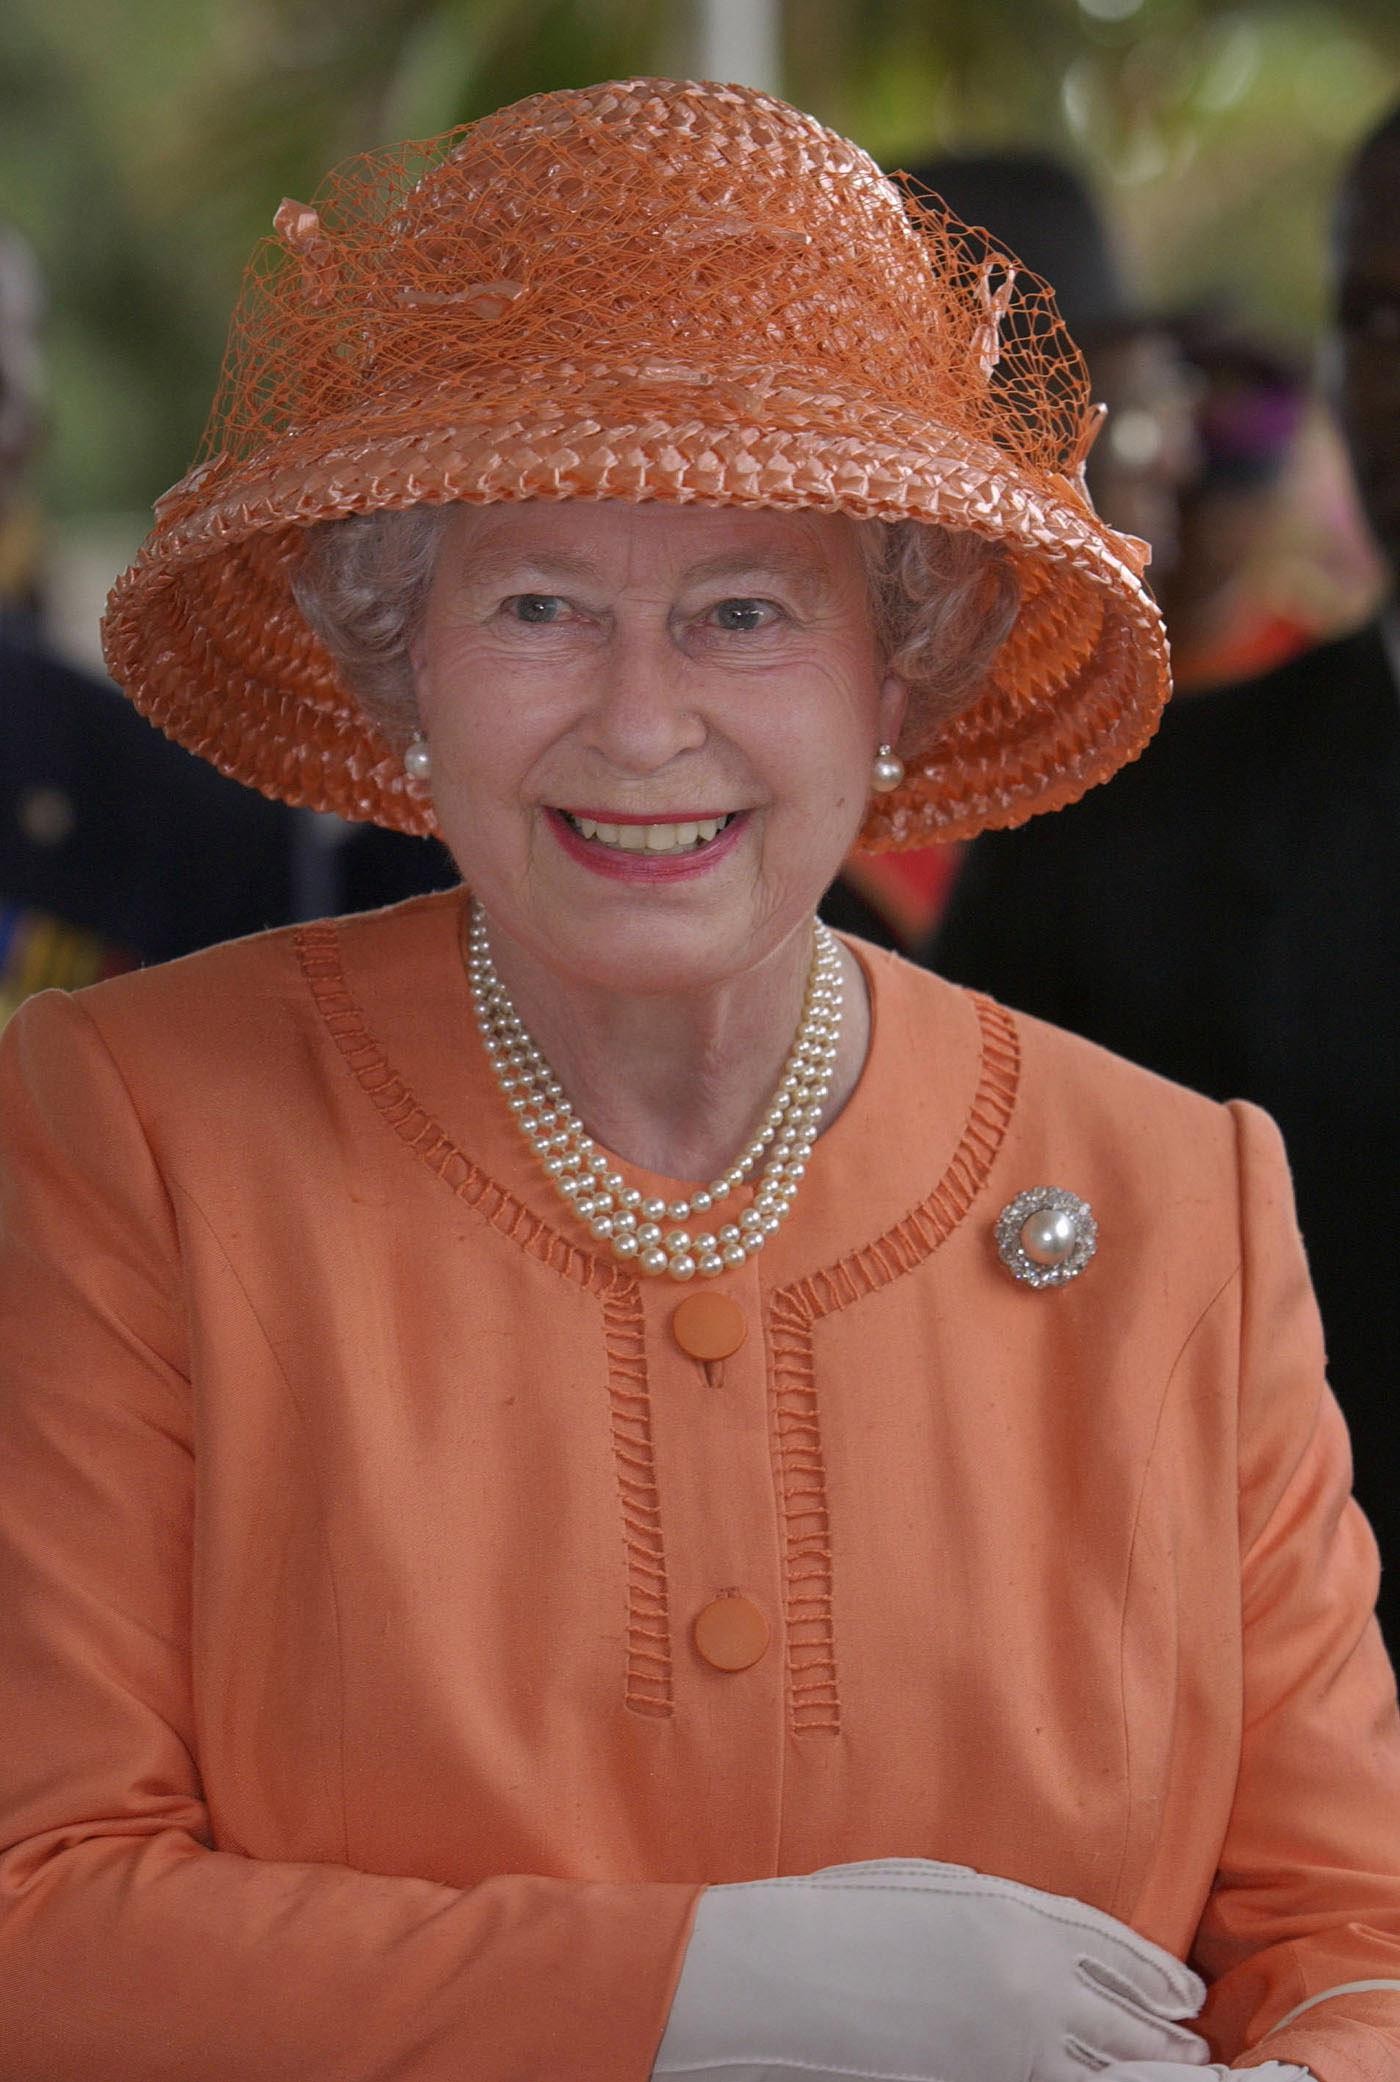 Elizabeth II na chegada a Kingston, Jamaica, em fevereiro de 2002. Era o início do tour do Jubileu de Ouro, que comemorou 50 anos de sua ascensão ao trono britânico — Foto: FIONA HANSON/AP